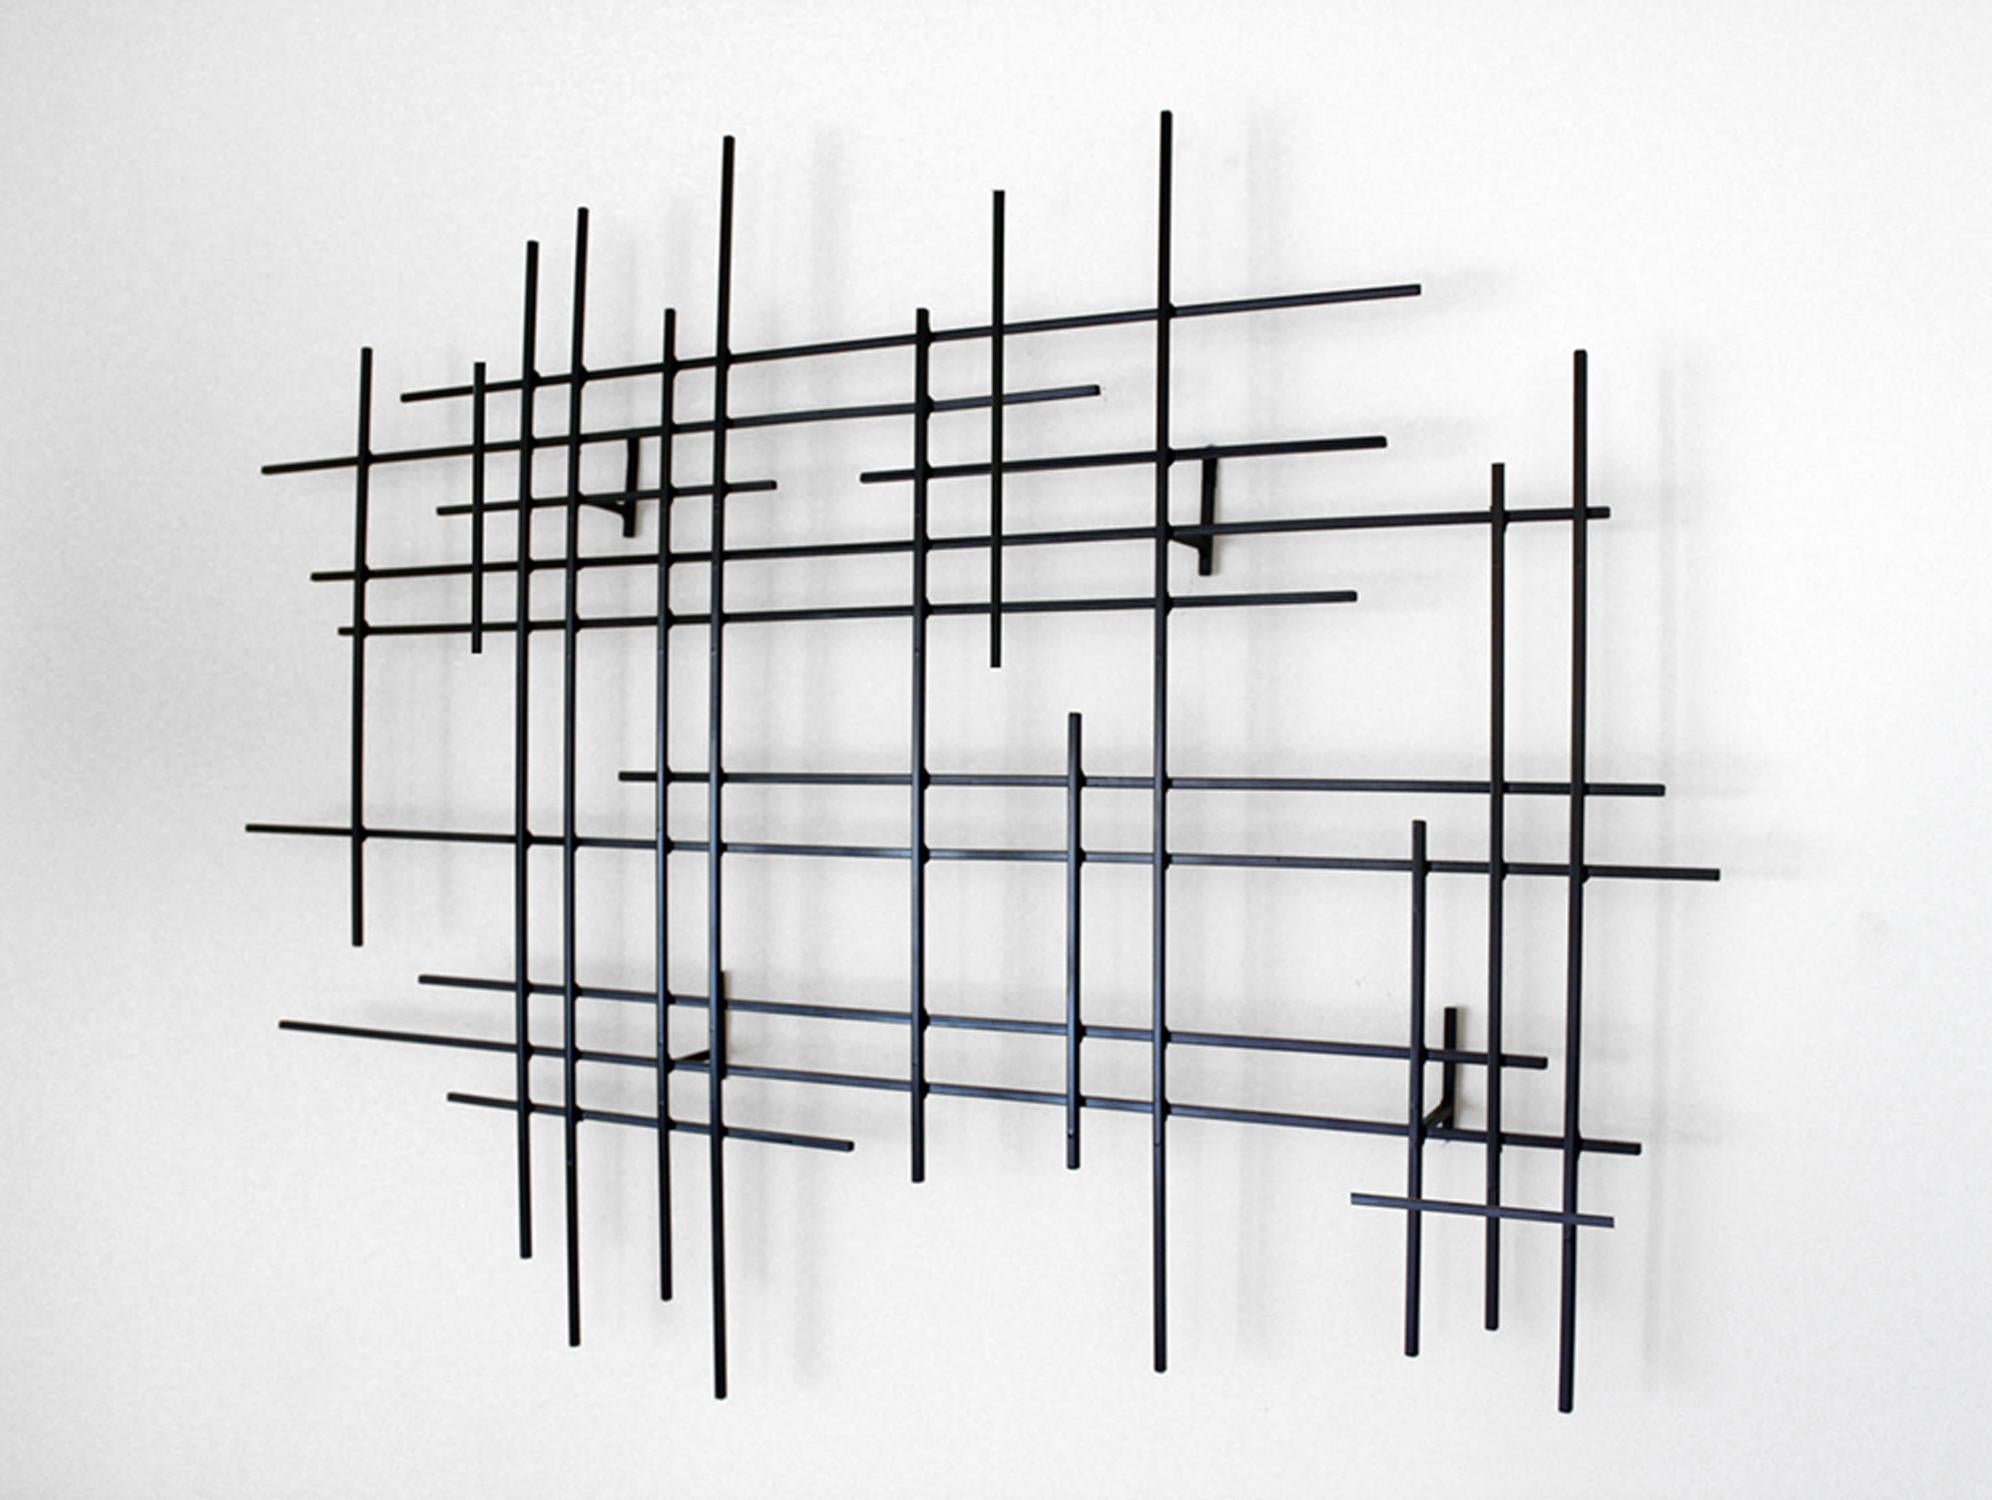 Linear 1, Abstract Original Metal Wall Sculpture, Modern design - Gray Abstract Sculpture by Karo Martirosyan